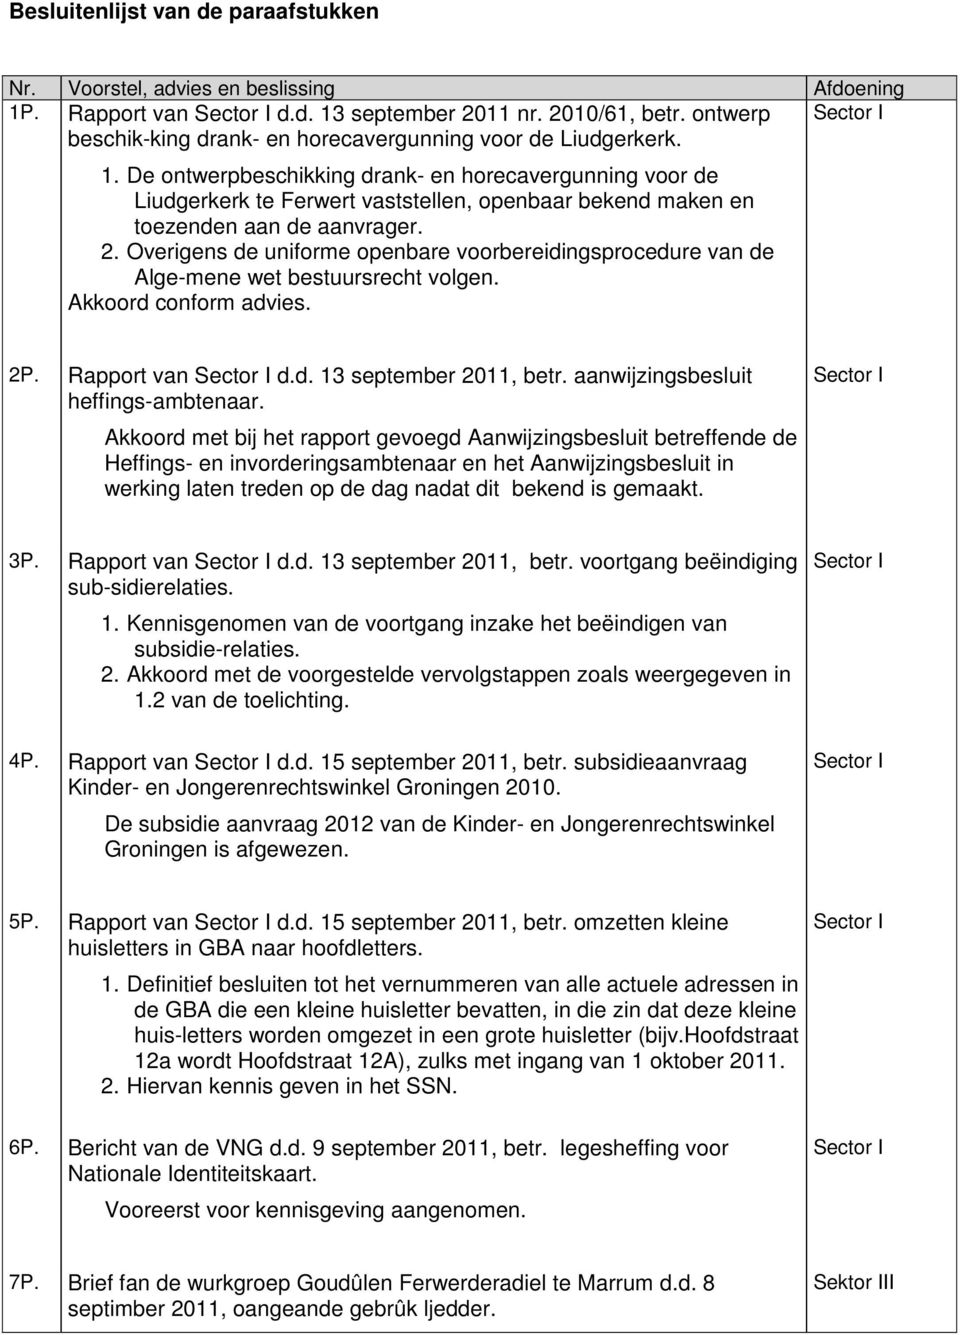 De ontwerpbeschikking drank- en horecavergunning voor de Liudgerkerk te Ferwert vaststellen, openbaar bekend maken en toezenden aan de aanvrager. 2.